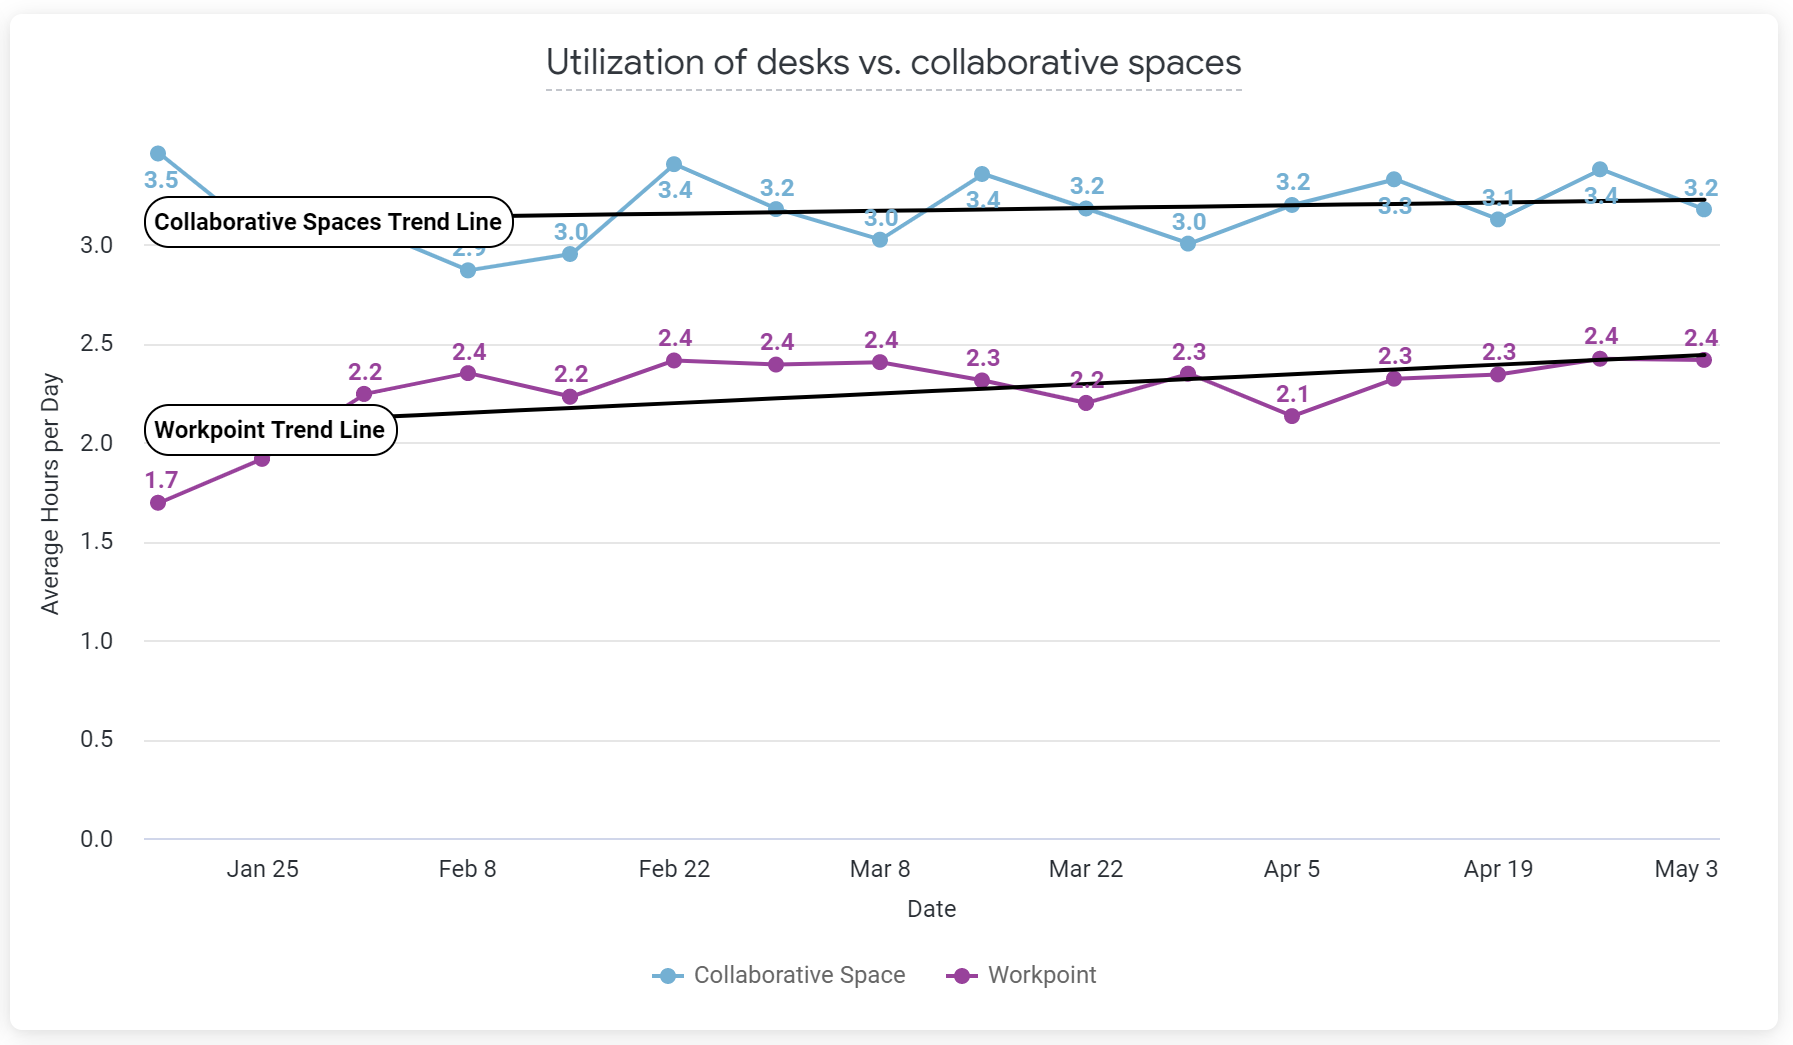 XY Sense - Utilization of Desks vs. Collaborative spaces h1 2021.png